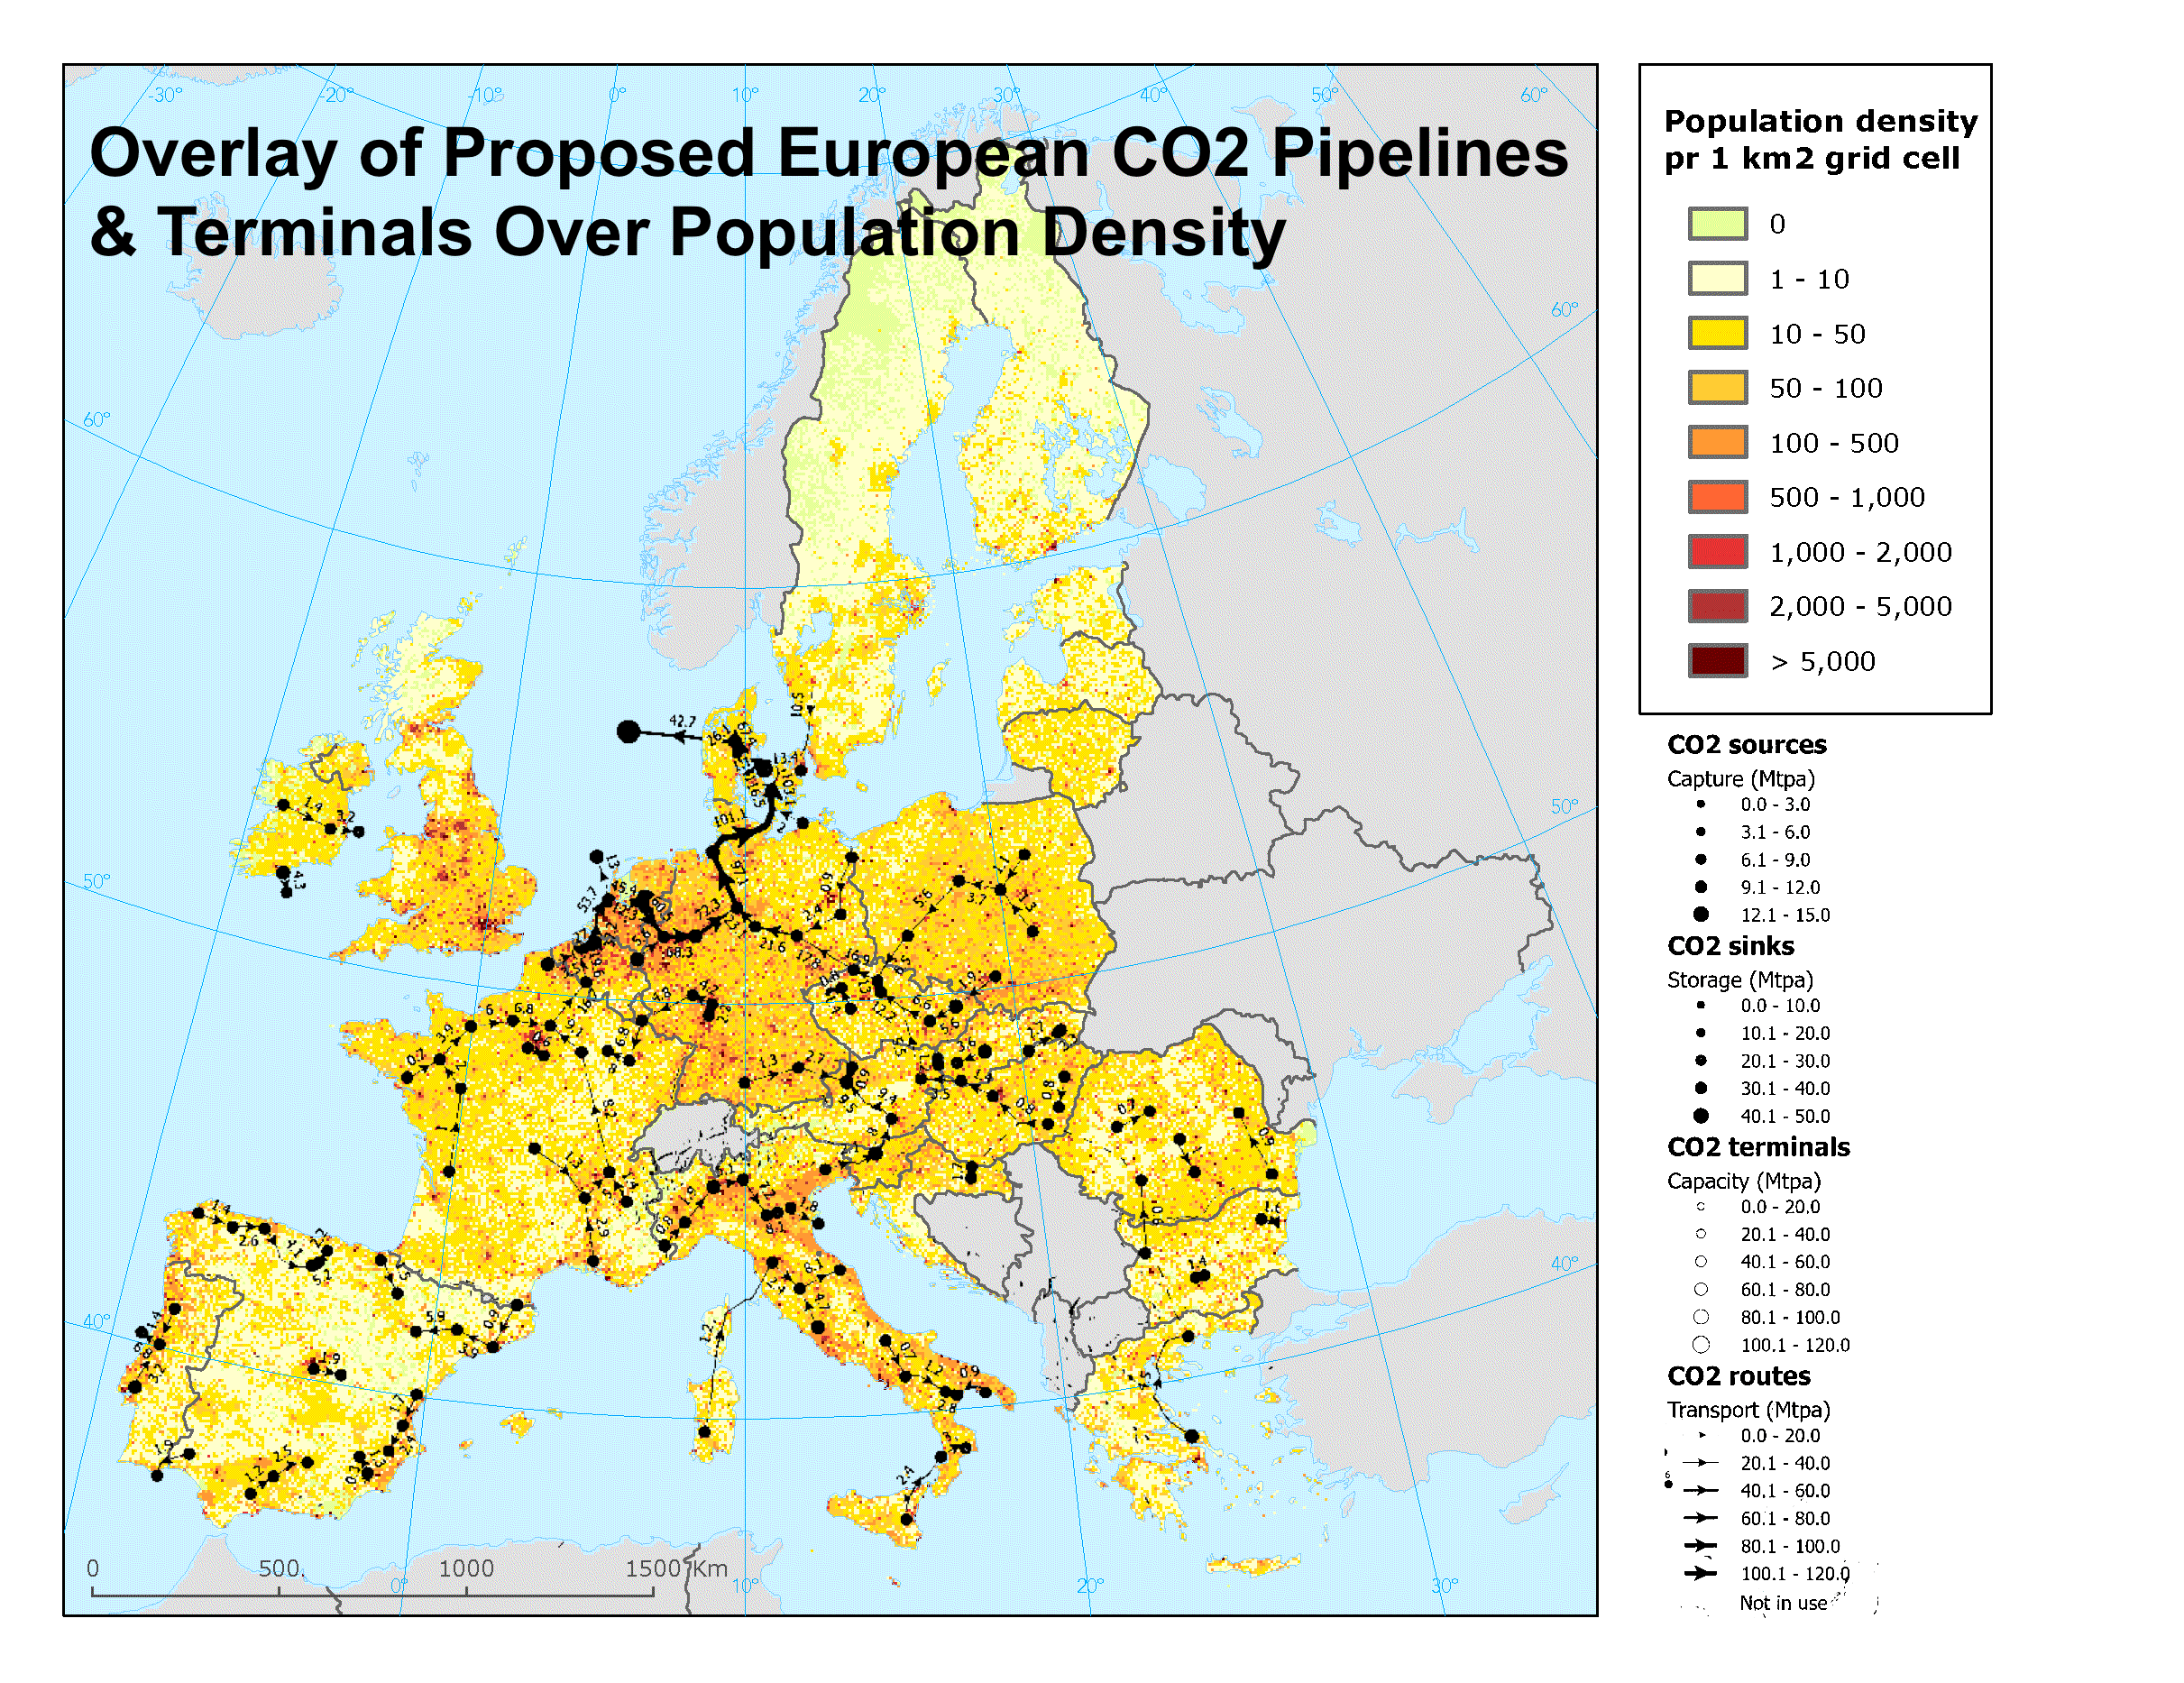 लेखक द्वारा यूरोपीय जनसंख्या घनत्व के मानचित्र के शीर्ष पर प्रस्तावित यूरोपीय CO2 पाइपलाइनों और टर्मिनलों का ओवरले